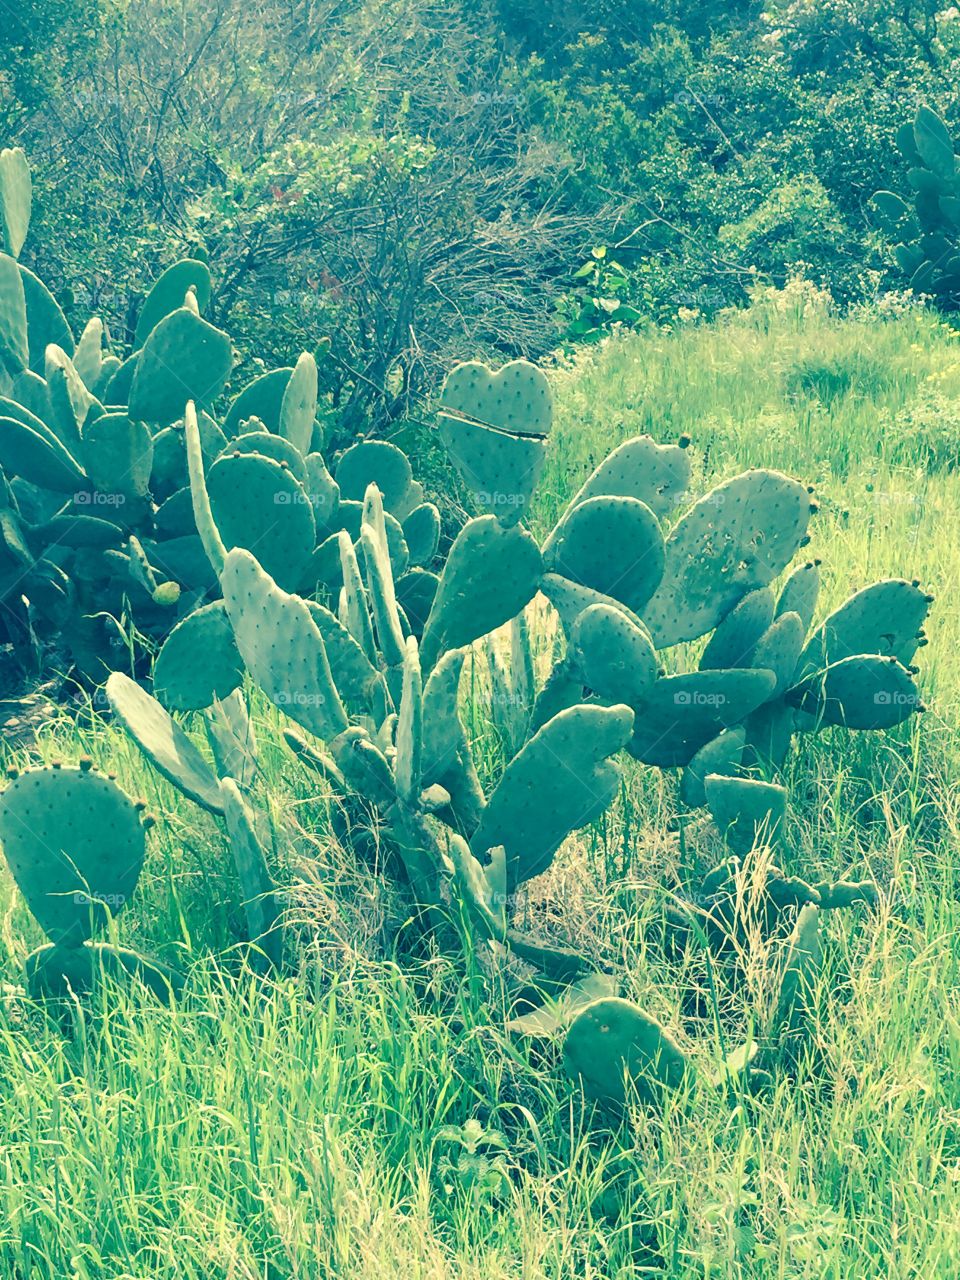 Cactus 